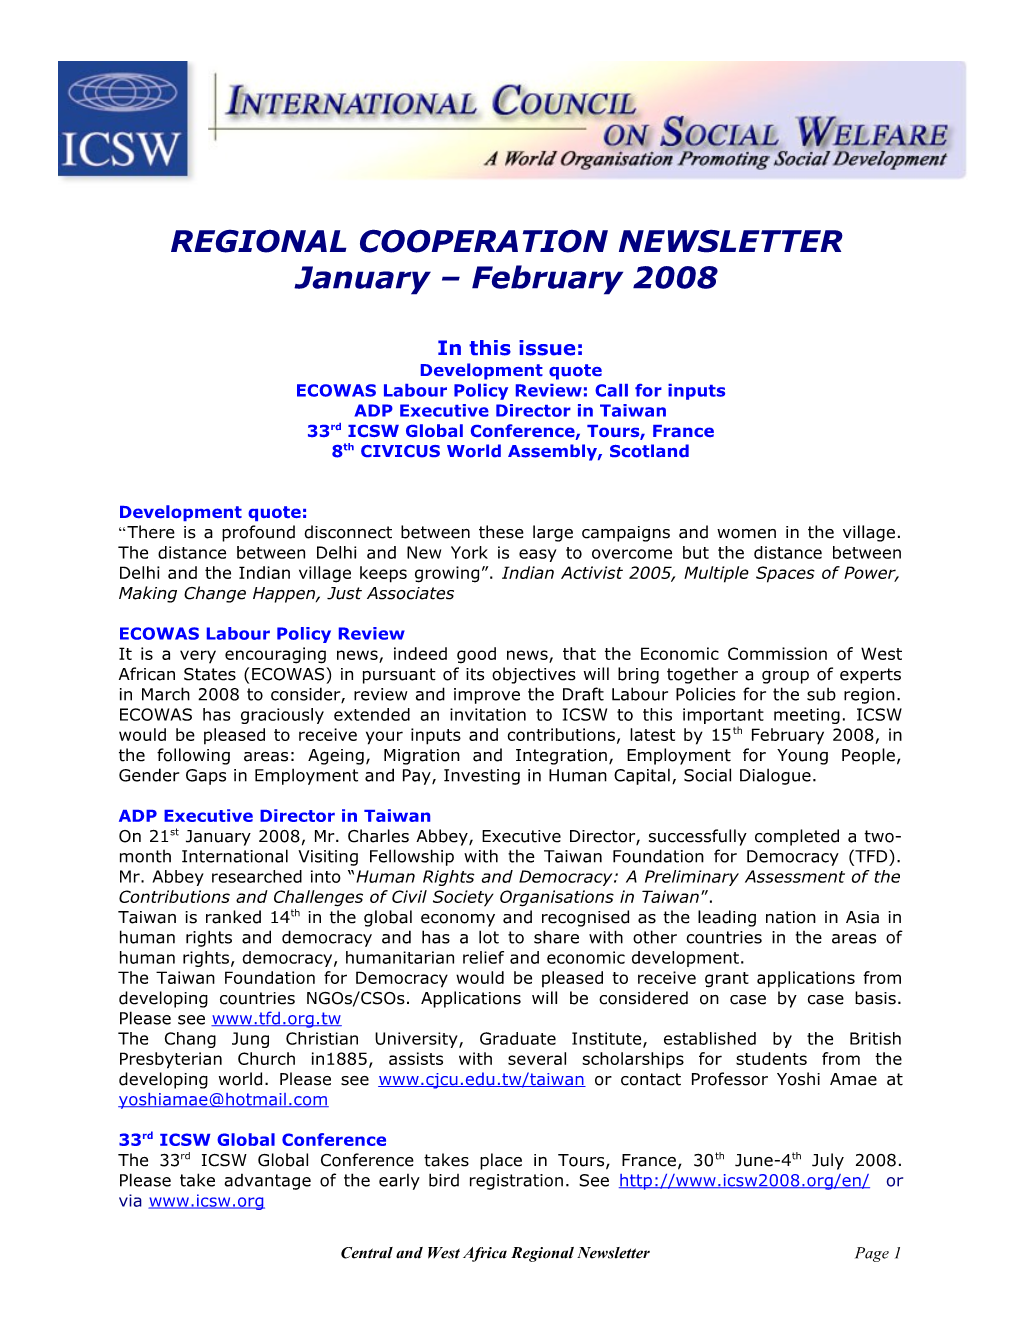 Regional Cooperation Newsletter Jan-Feb 2008